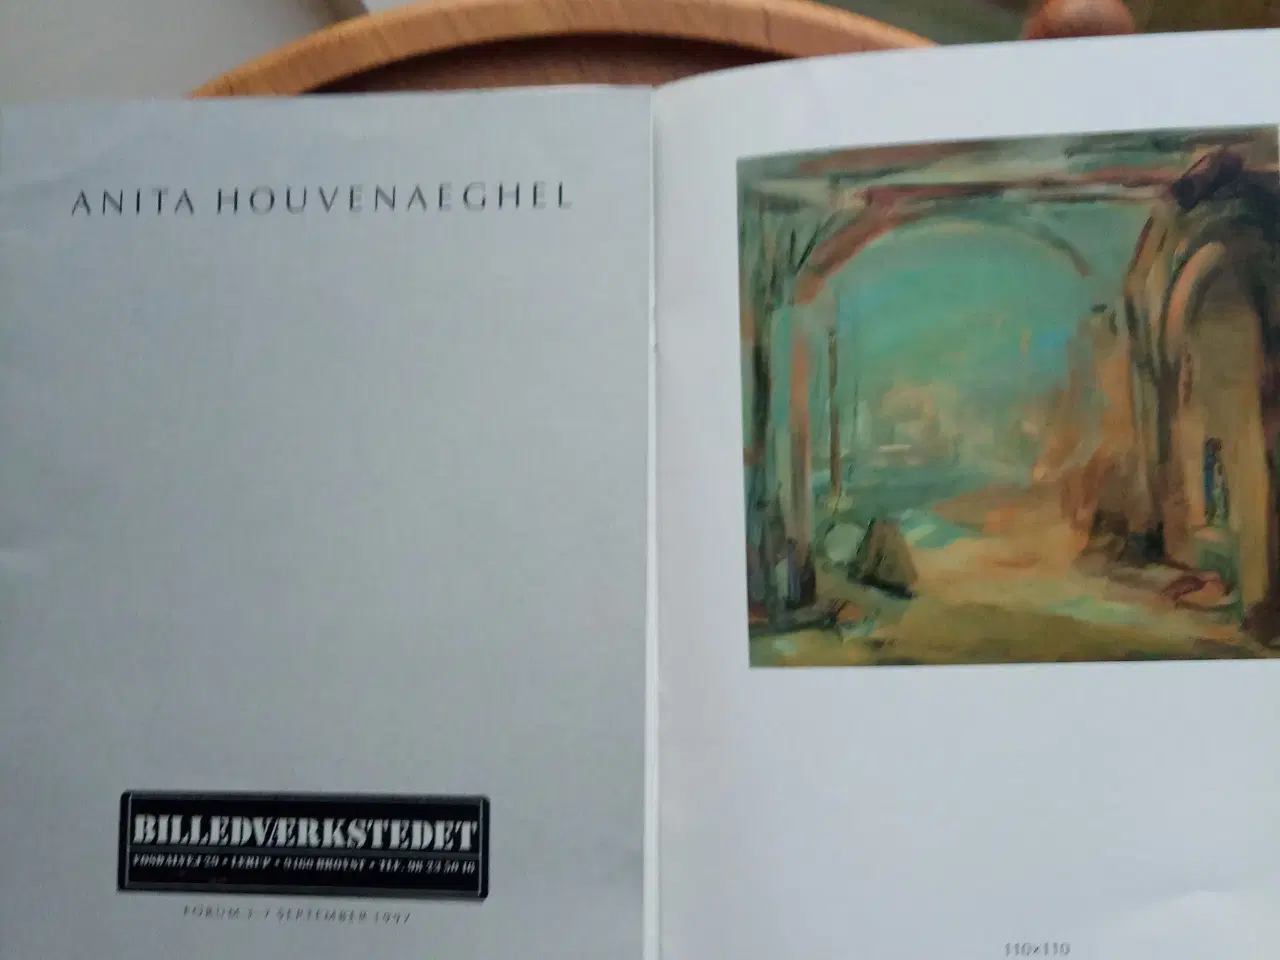 Billede 1 - Kunstbøger mv. om Anita Houvenaeghel